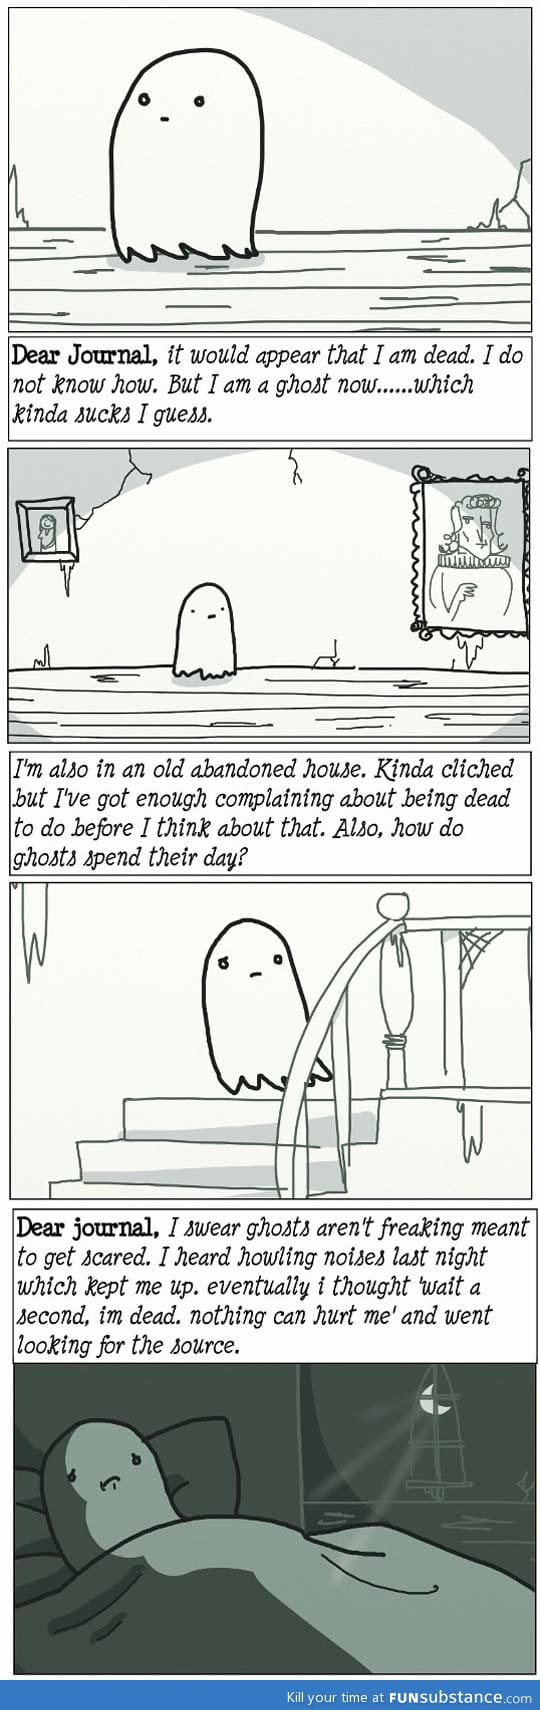 Ghost feels